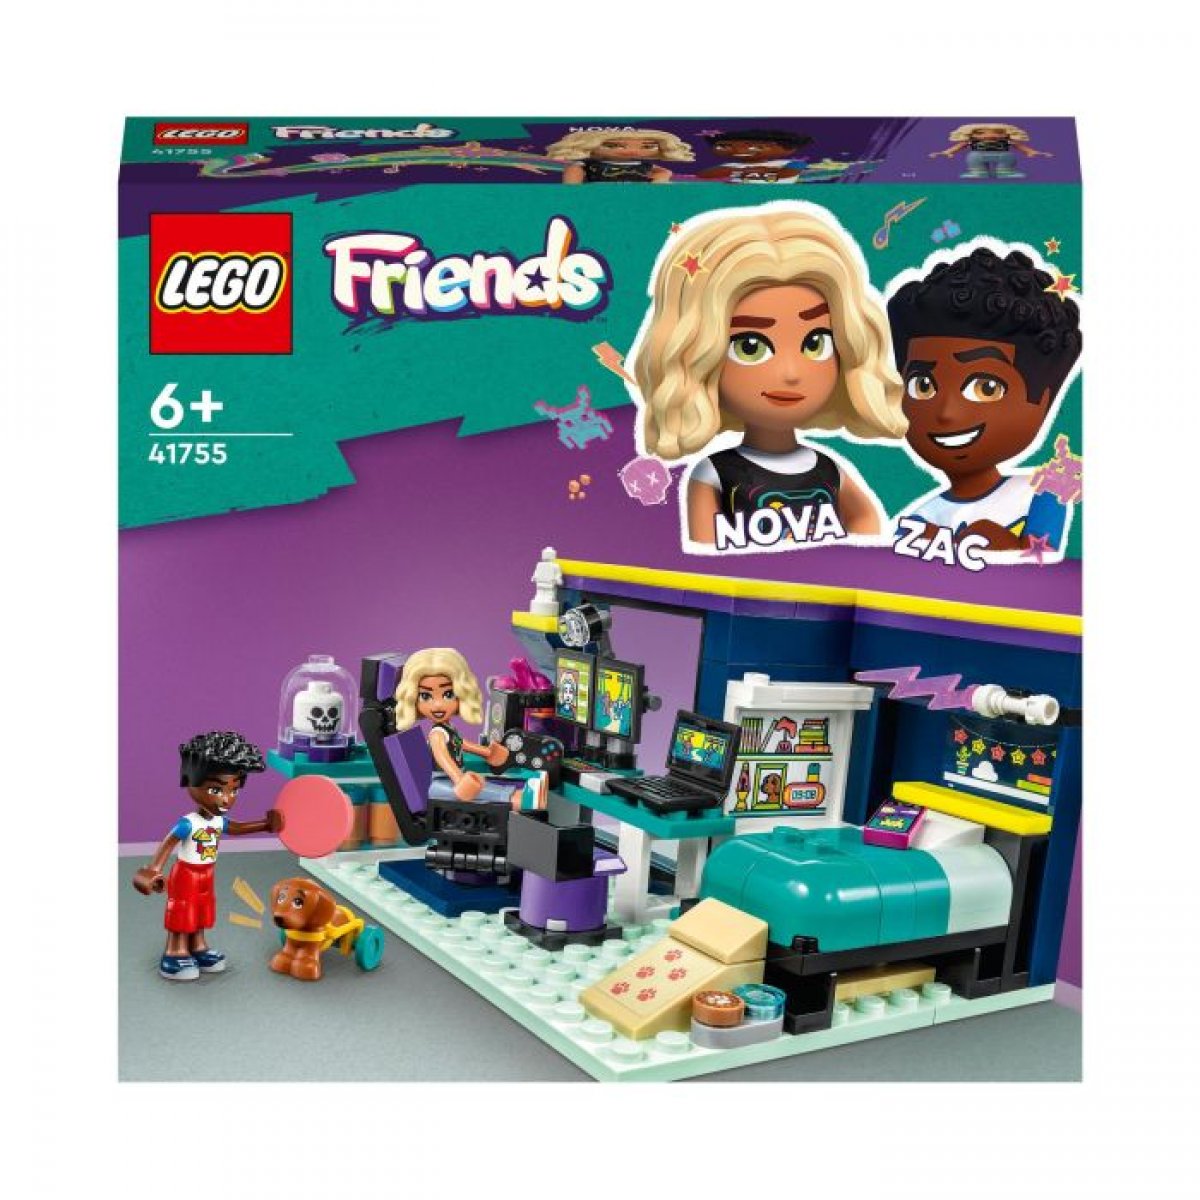 LEGO 41755 - Friends Novas Zimmer